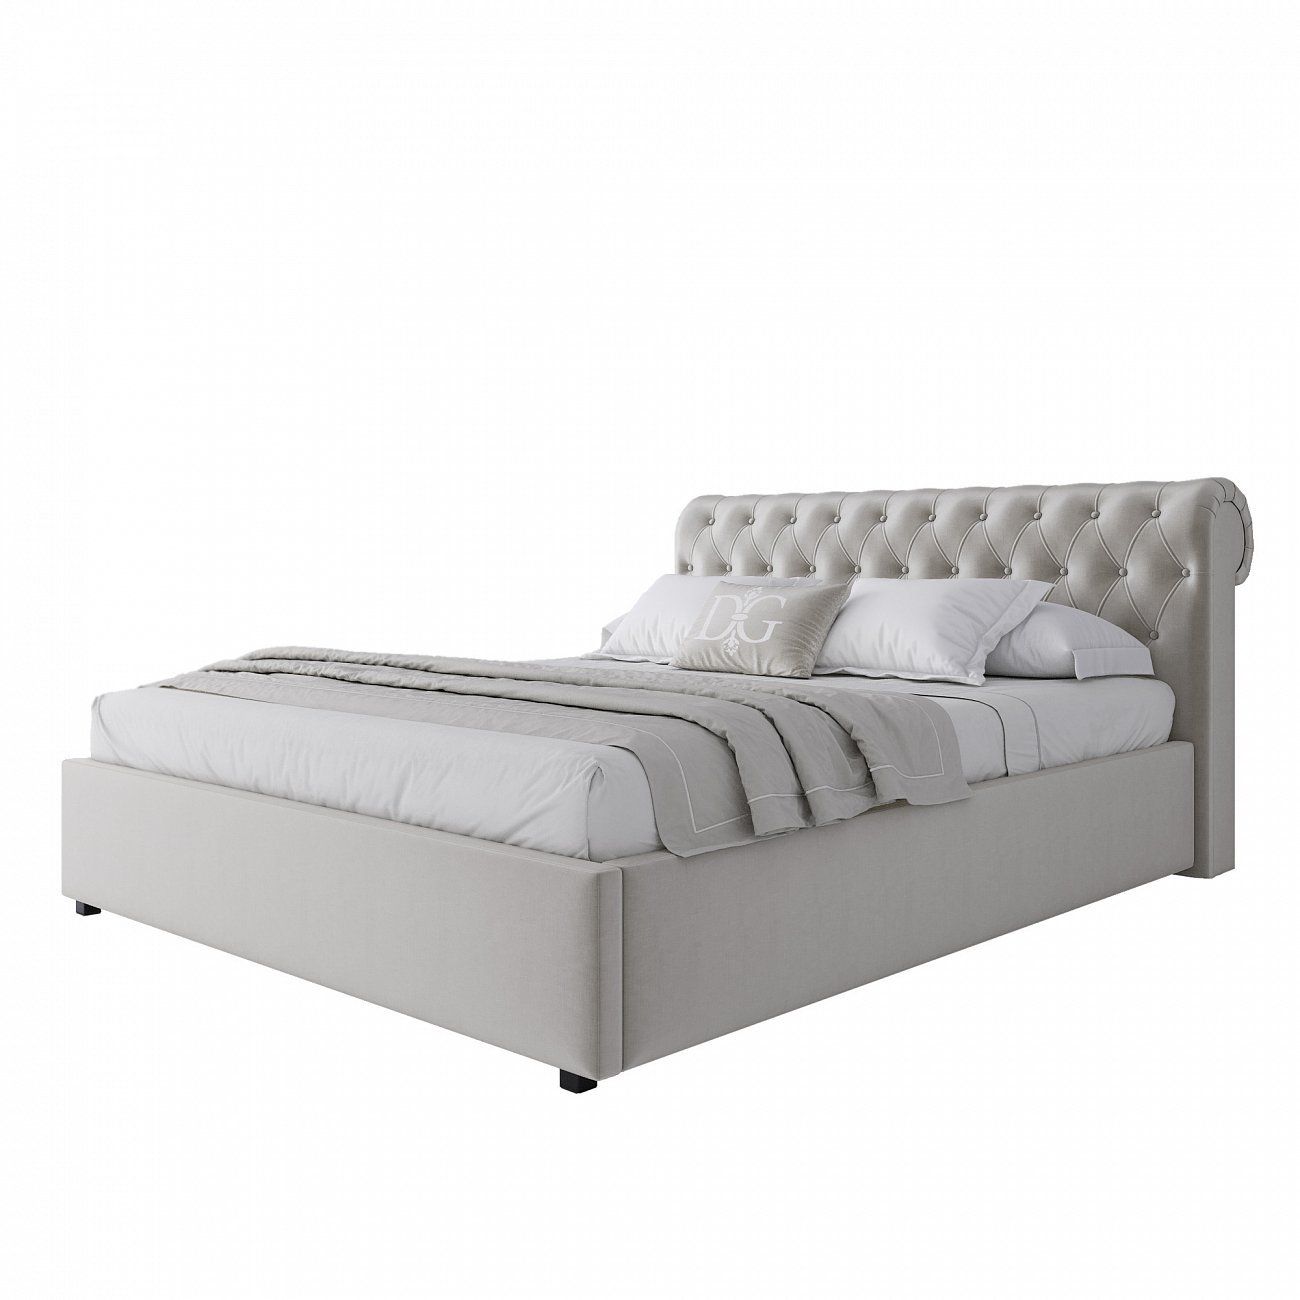 Кровать двуспальная с мягким изголовьем 160х200 см молочная Sweet Dreams